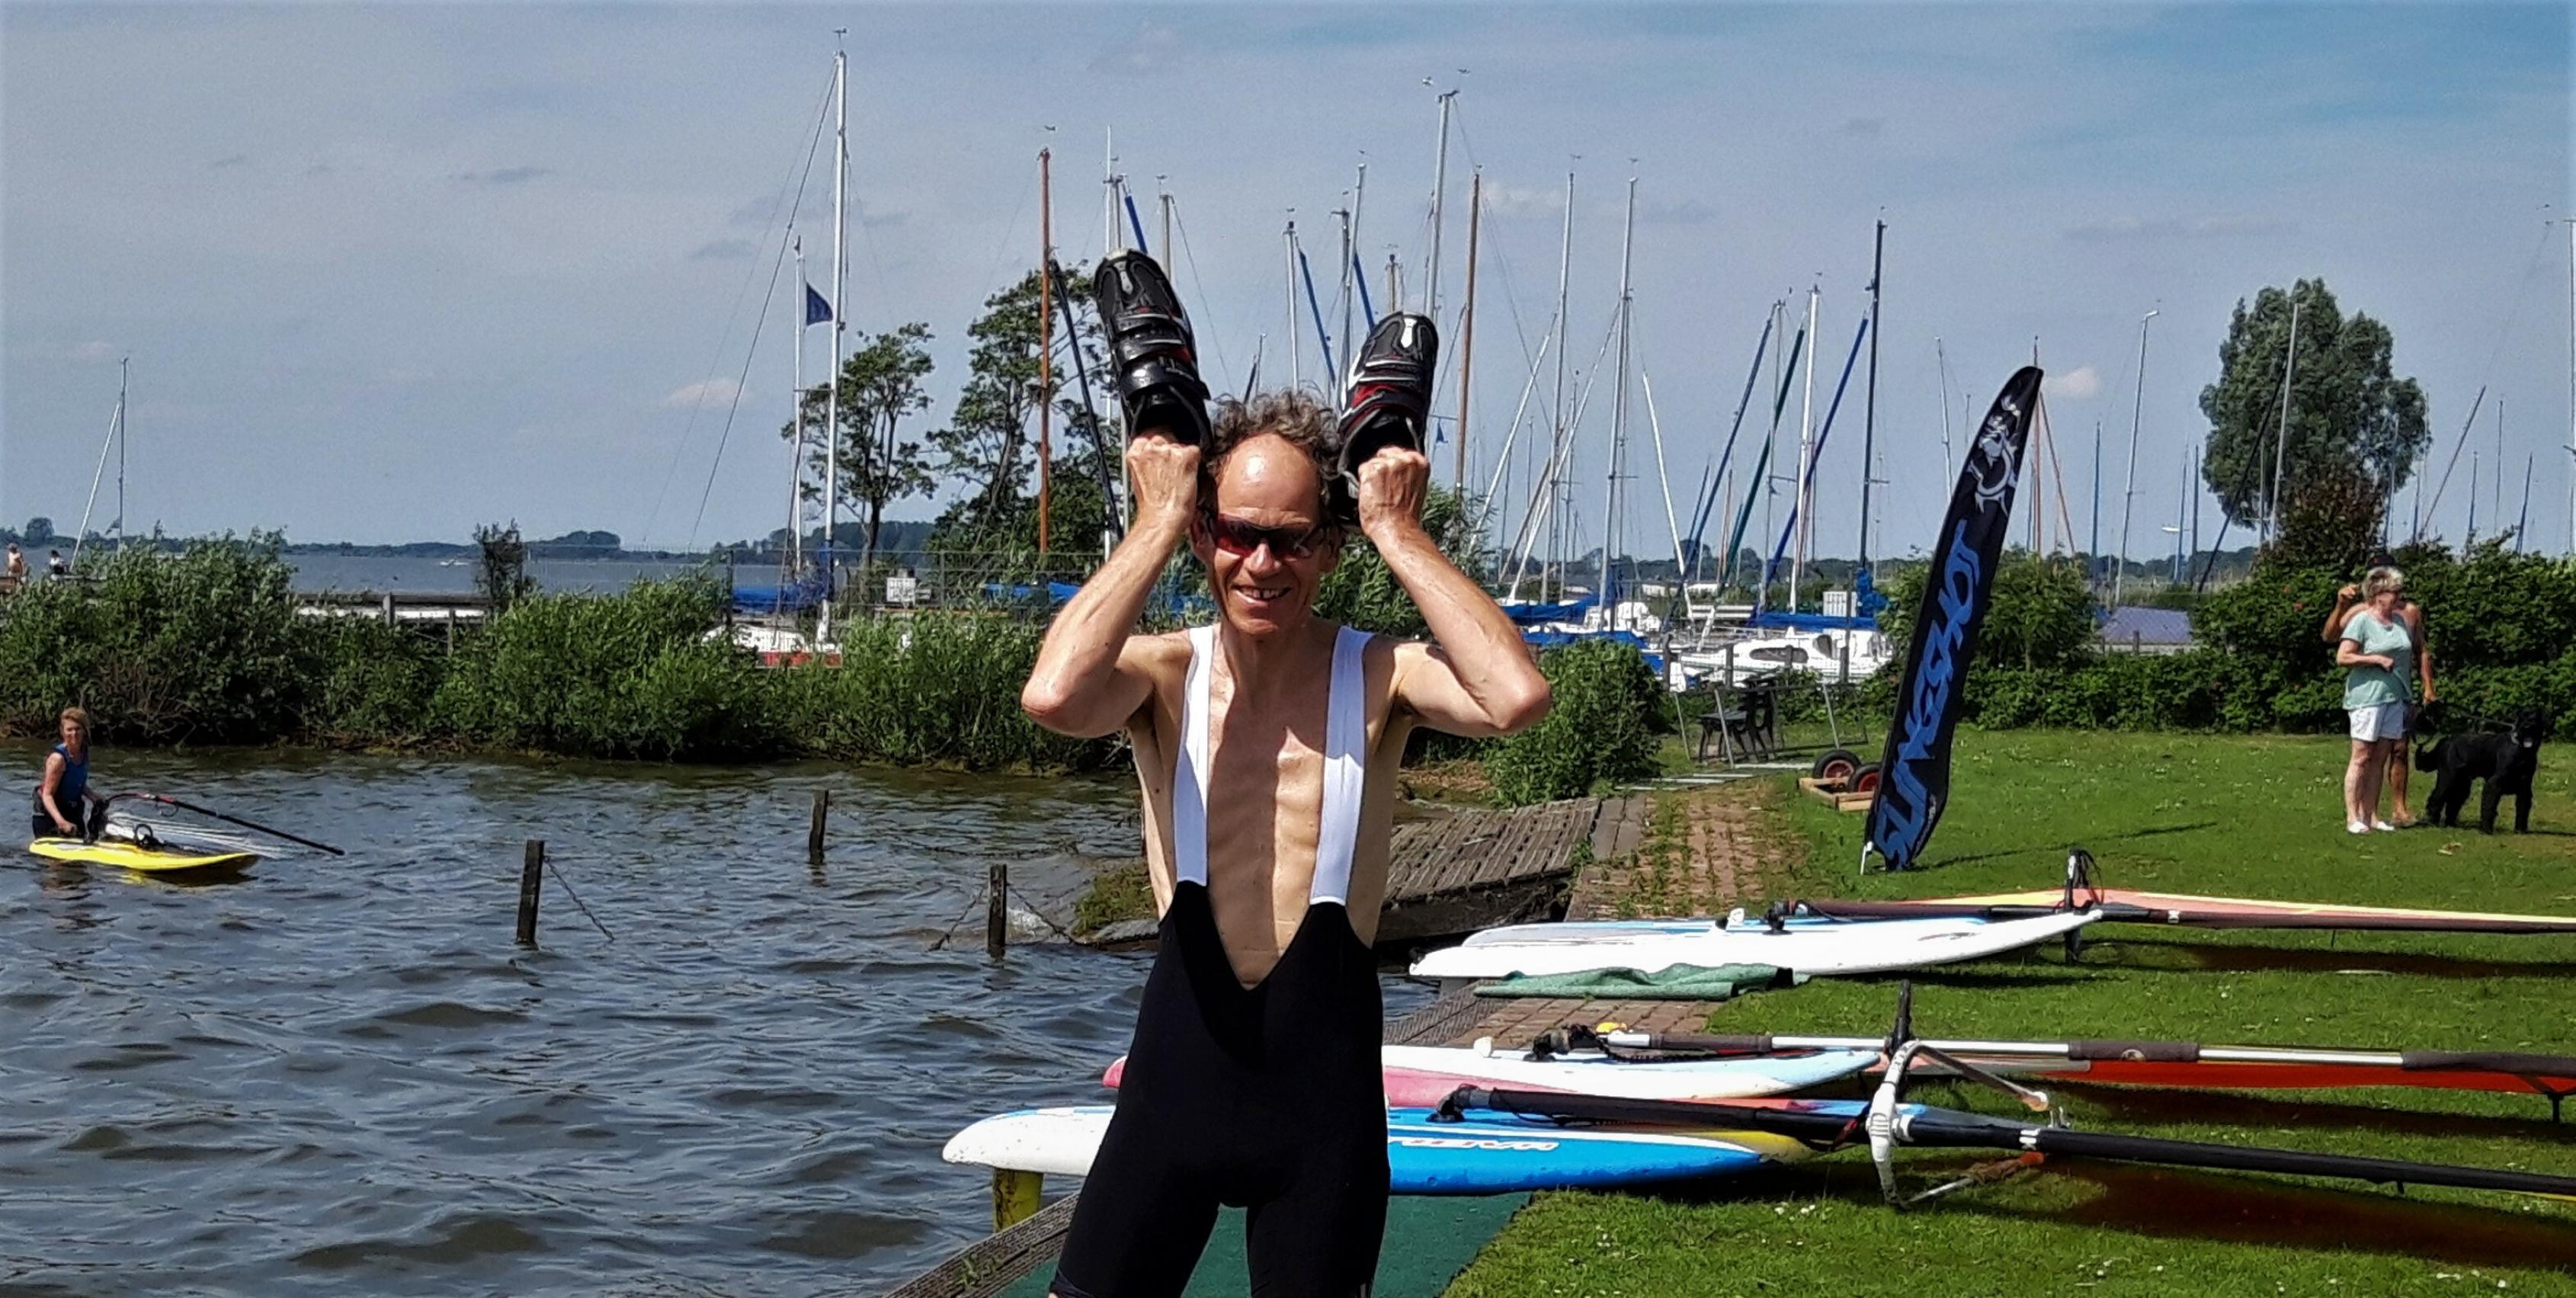 Autor Martin C posiert mit den Radschuhen in der Hand am vom Wind aufgewühlten Wasser des Sees.